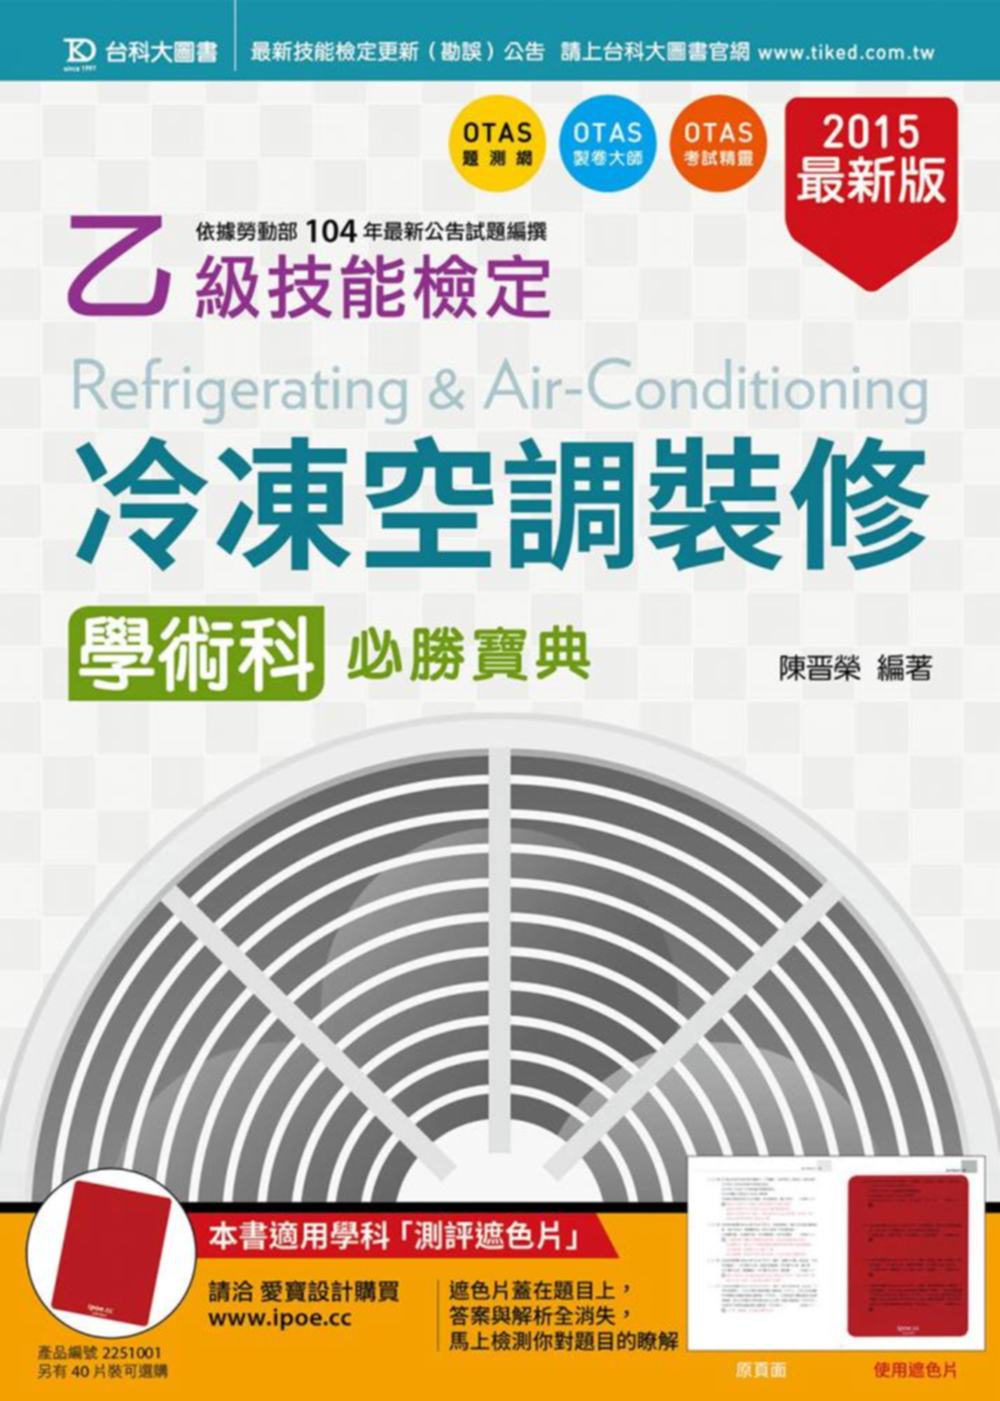 乙級冷凍空調裝修學術科必勝寶典(2015年最新版)(附贈OTAS題測系統)